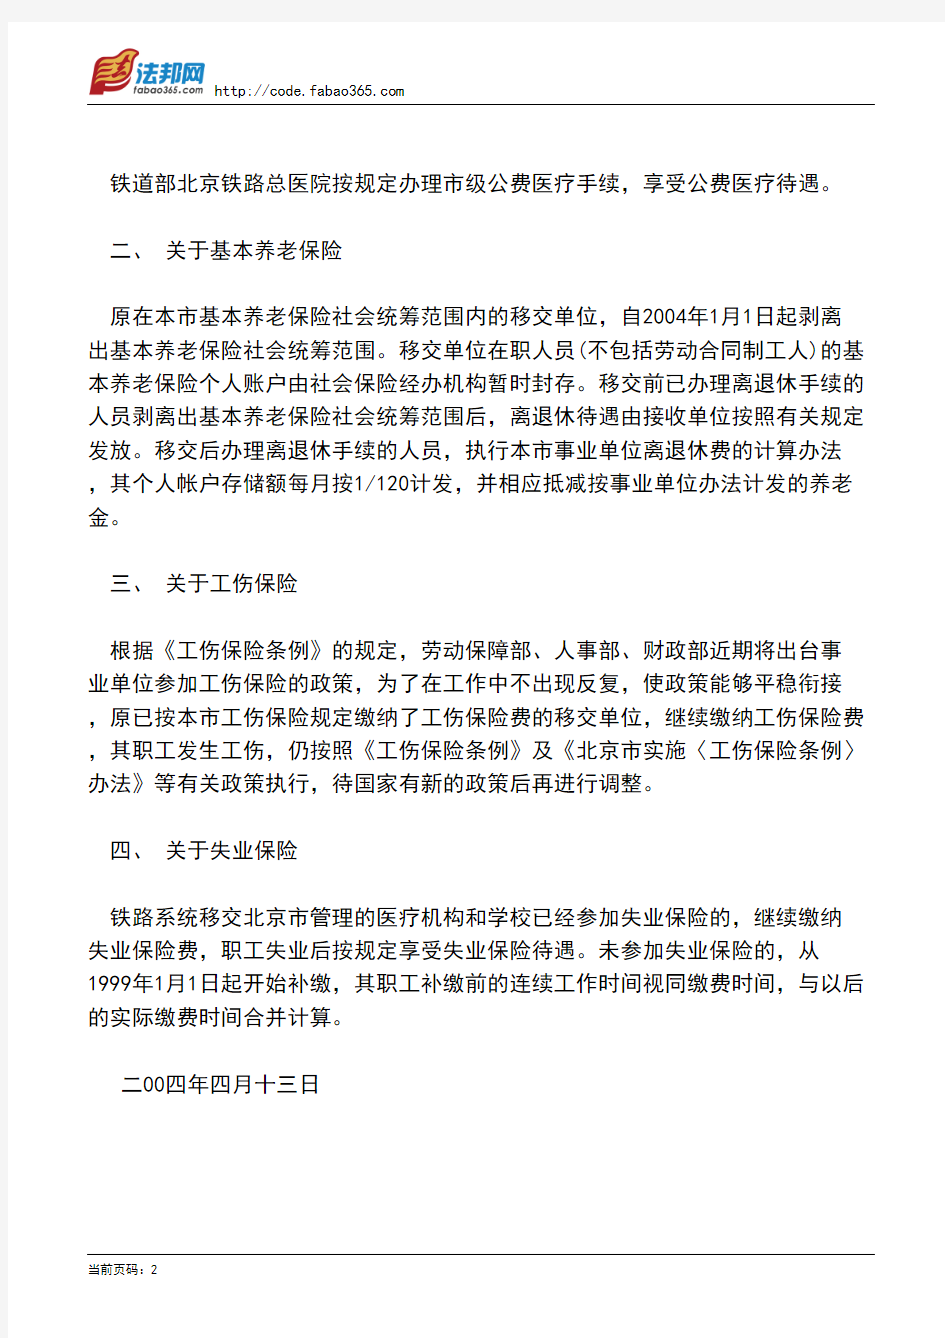 北京市劳动和社会保障局关于铁路系统在京教育医疗机构移交北京市管理有关社会保险工作的实施意见